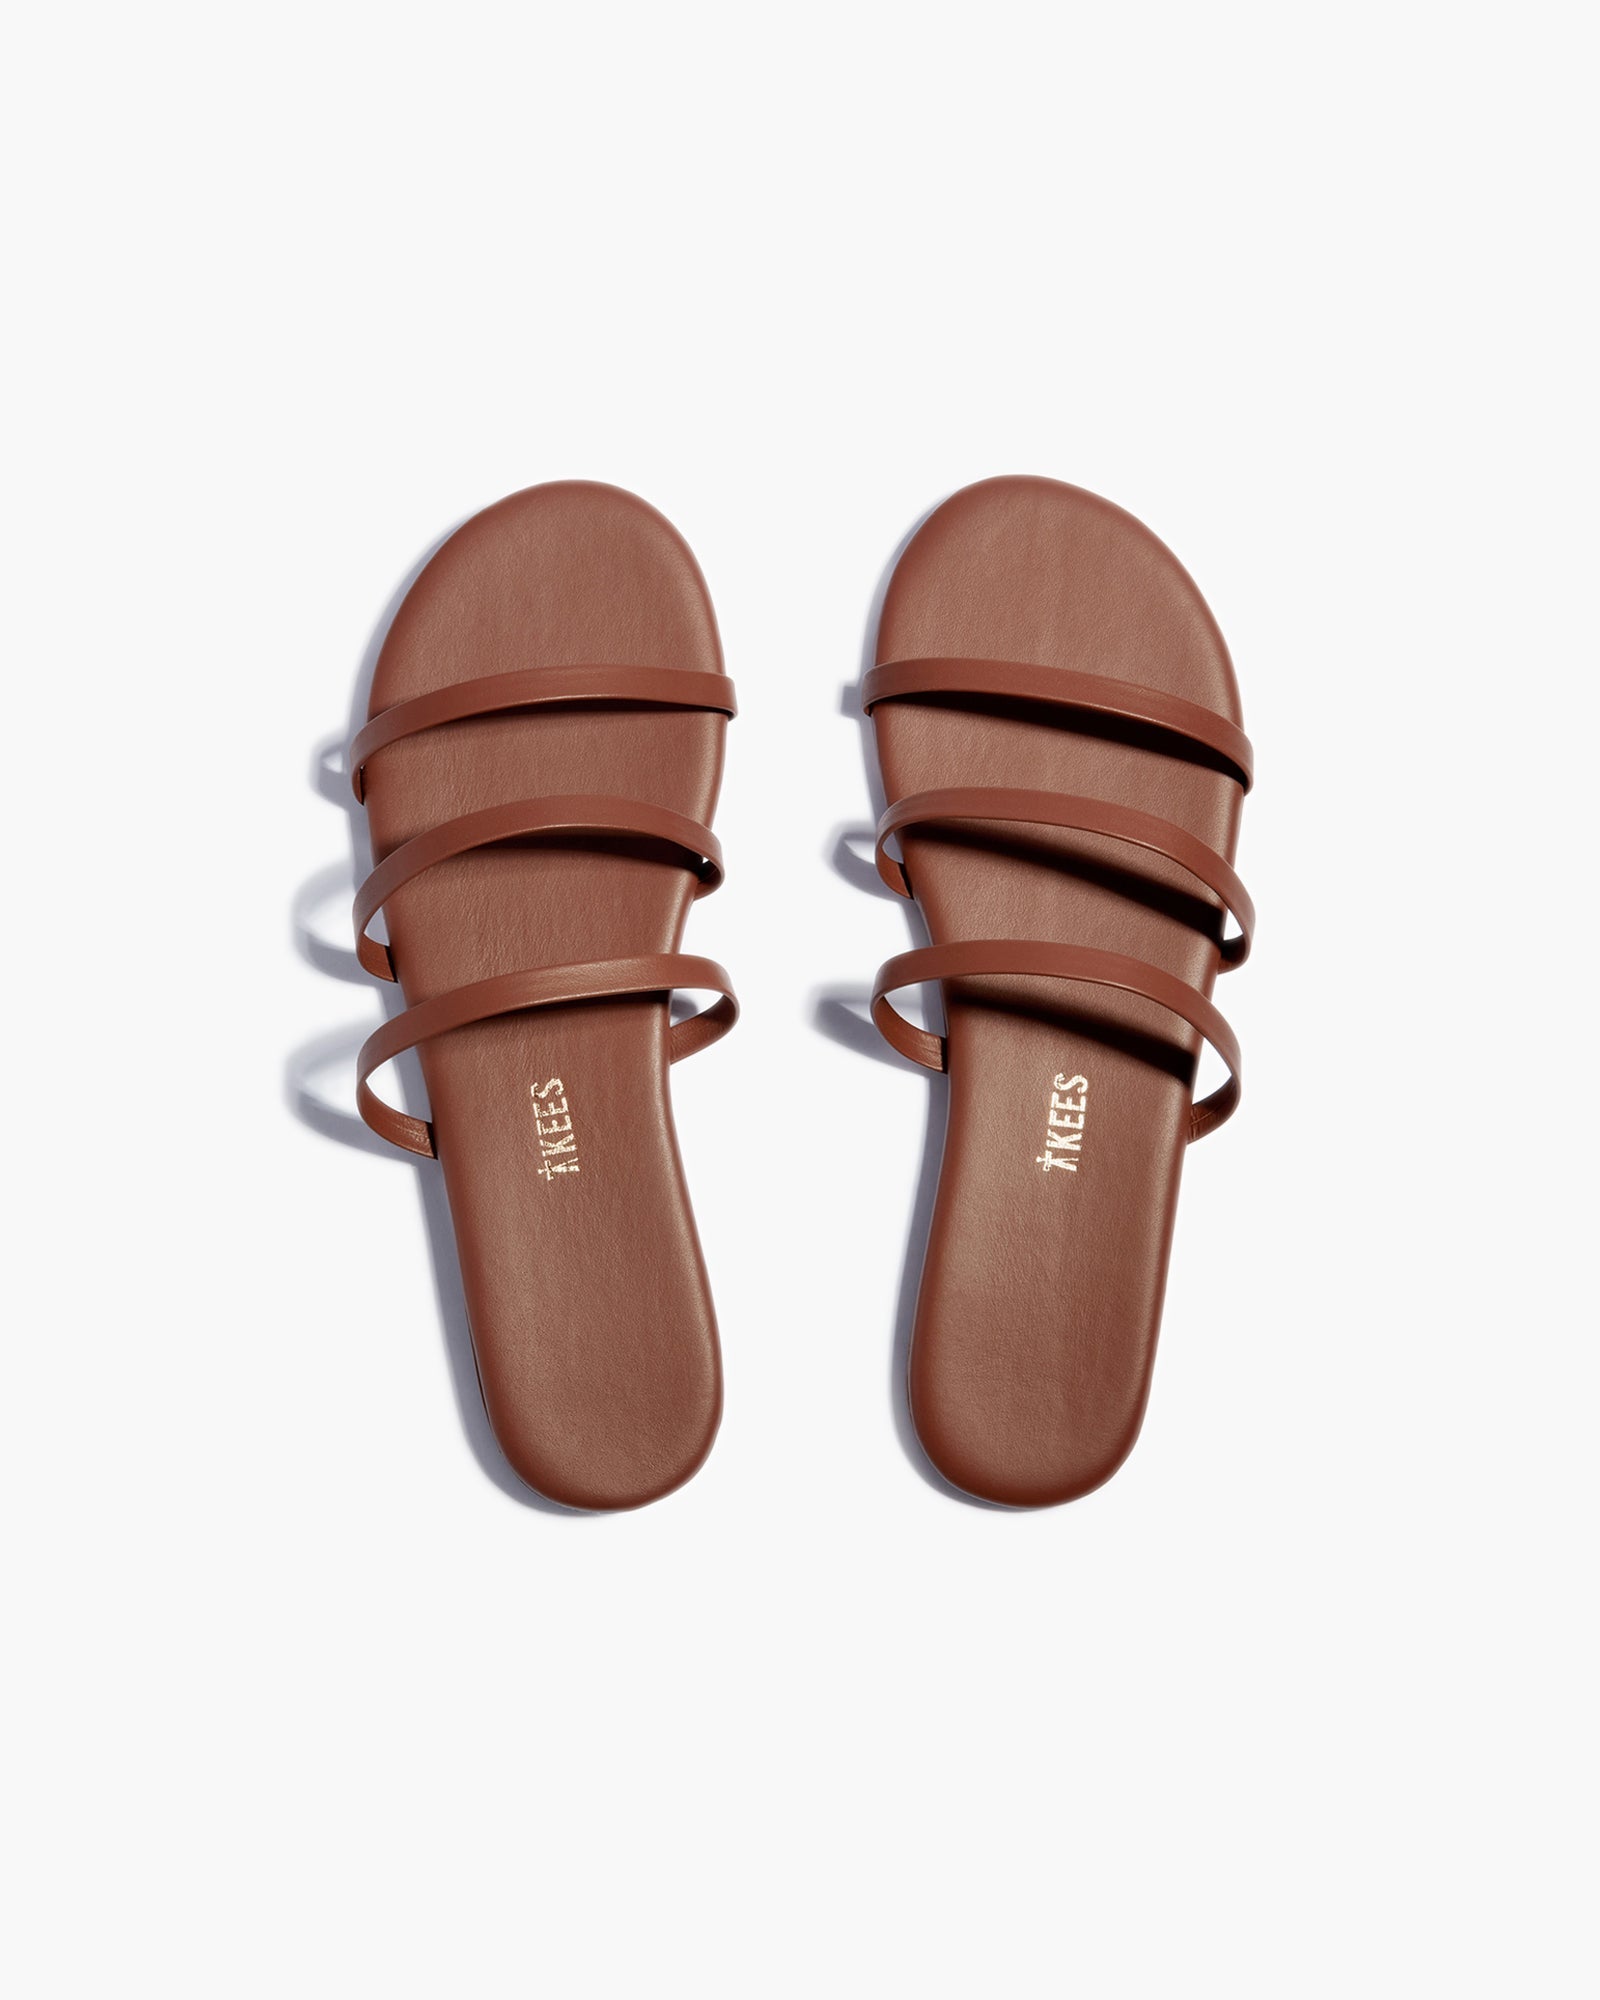 Emma in Heatwave | Sandals | Women's Footwear – TKEES